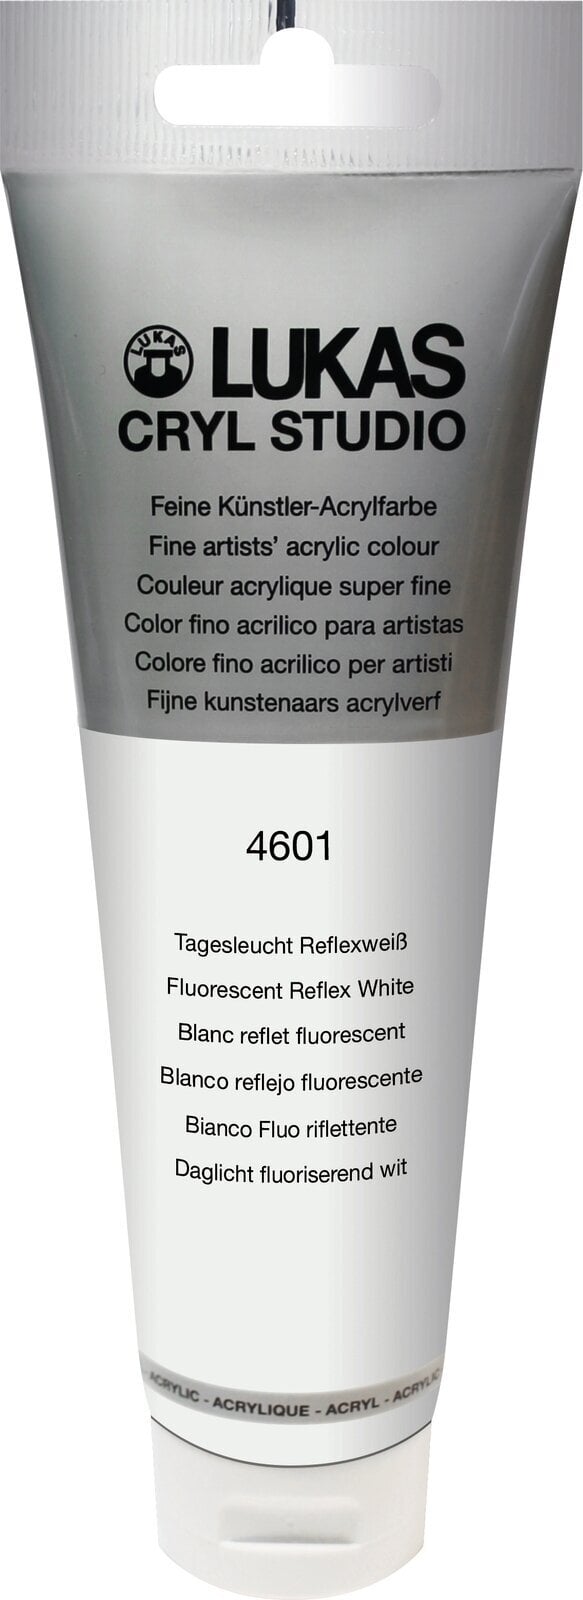 Farba akrylowa Lukas Cryl Studio Farba akrylowa 125 ml Flourescent Reflex White